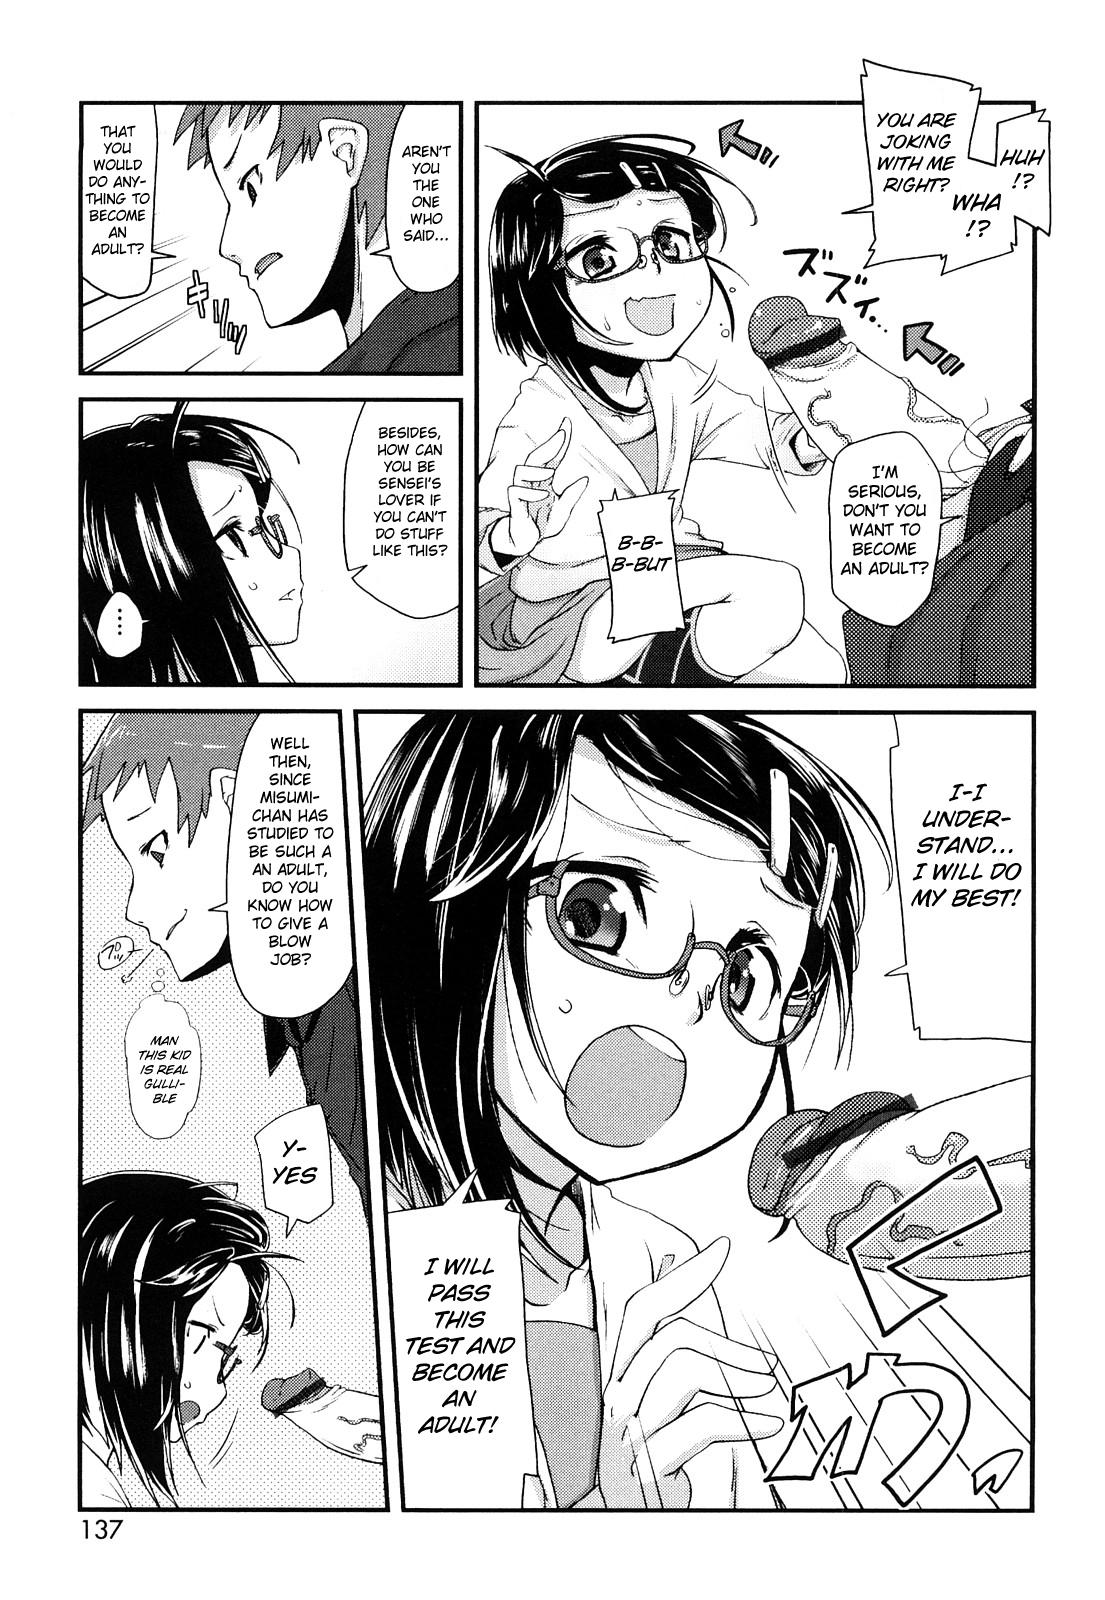 Misumi's Adult Education 4